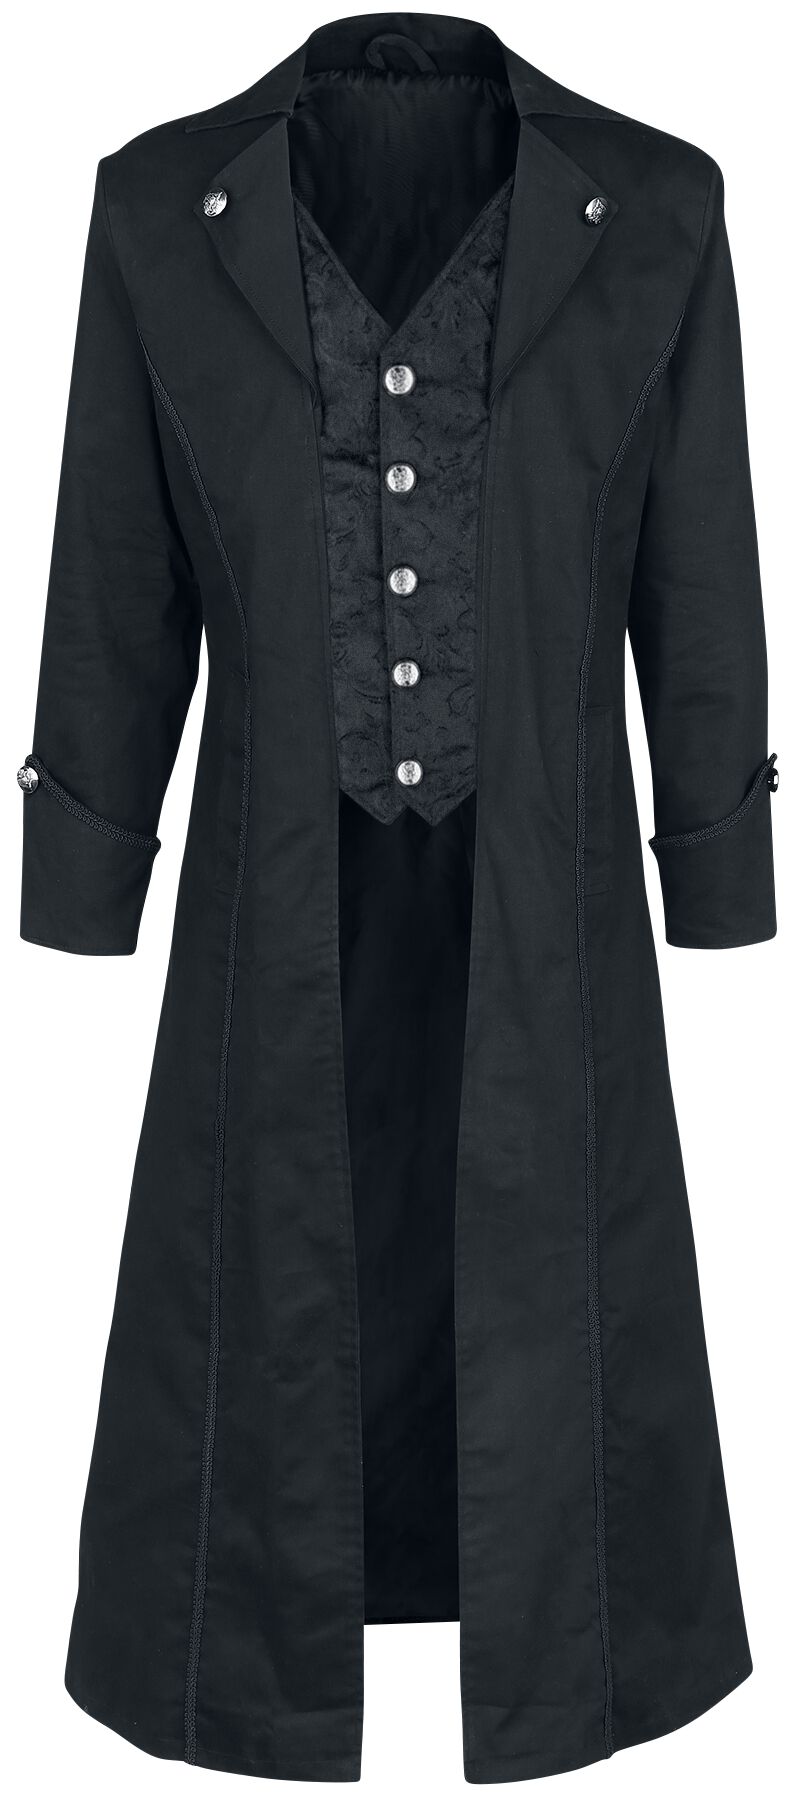 Image of Cappotto in stile militare Gothic di Altana Industries - Dark Brocade Coat - L - Uomo - nero